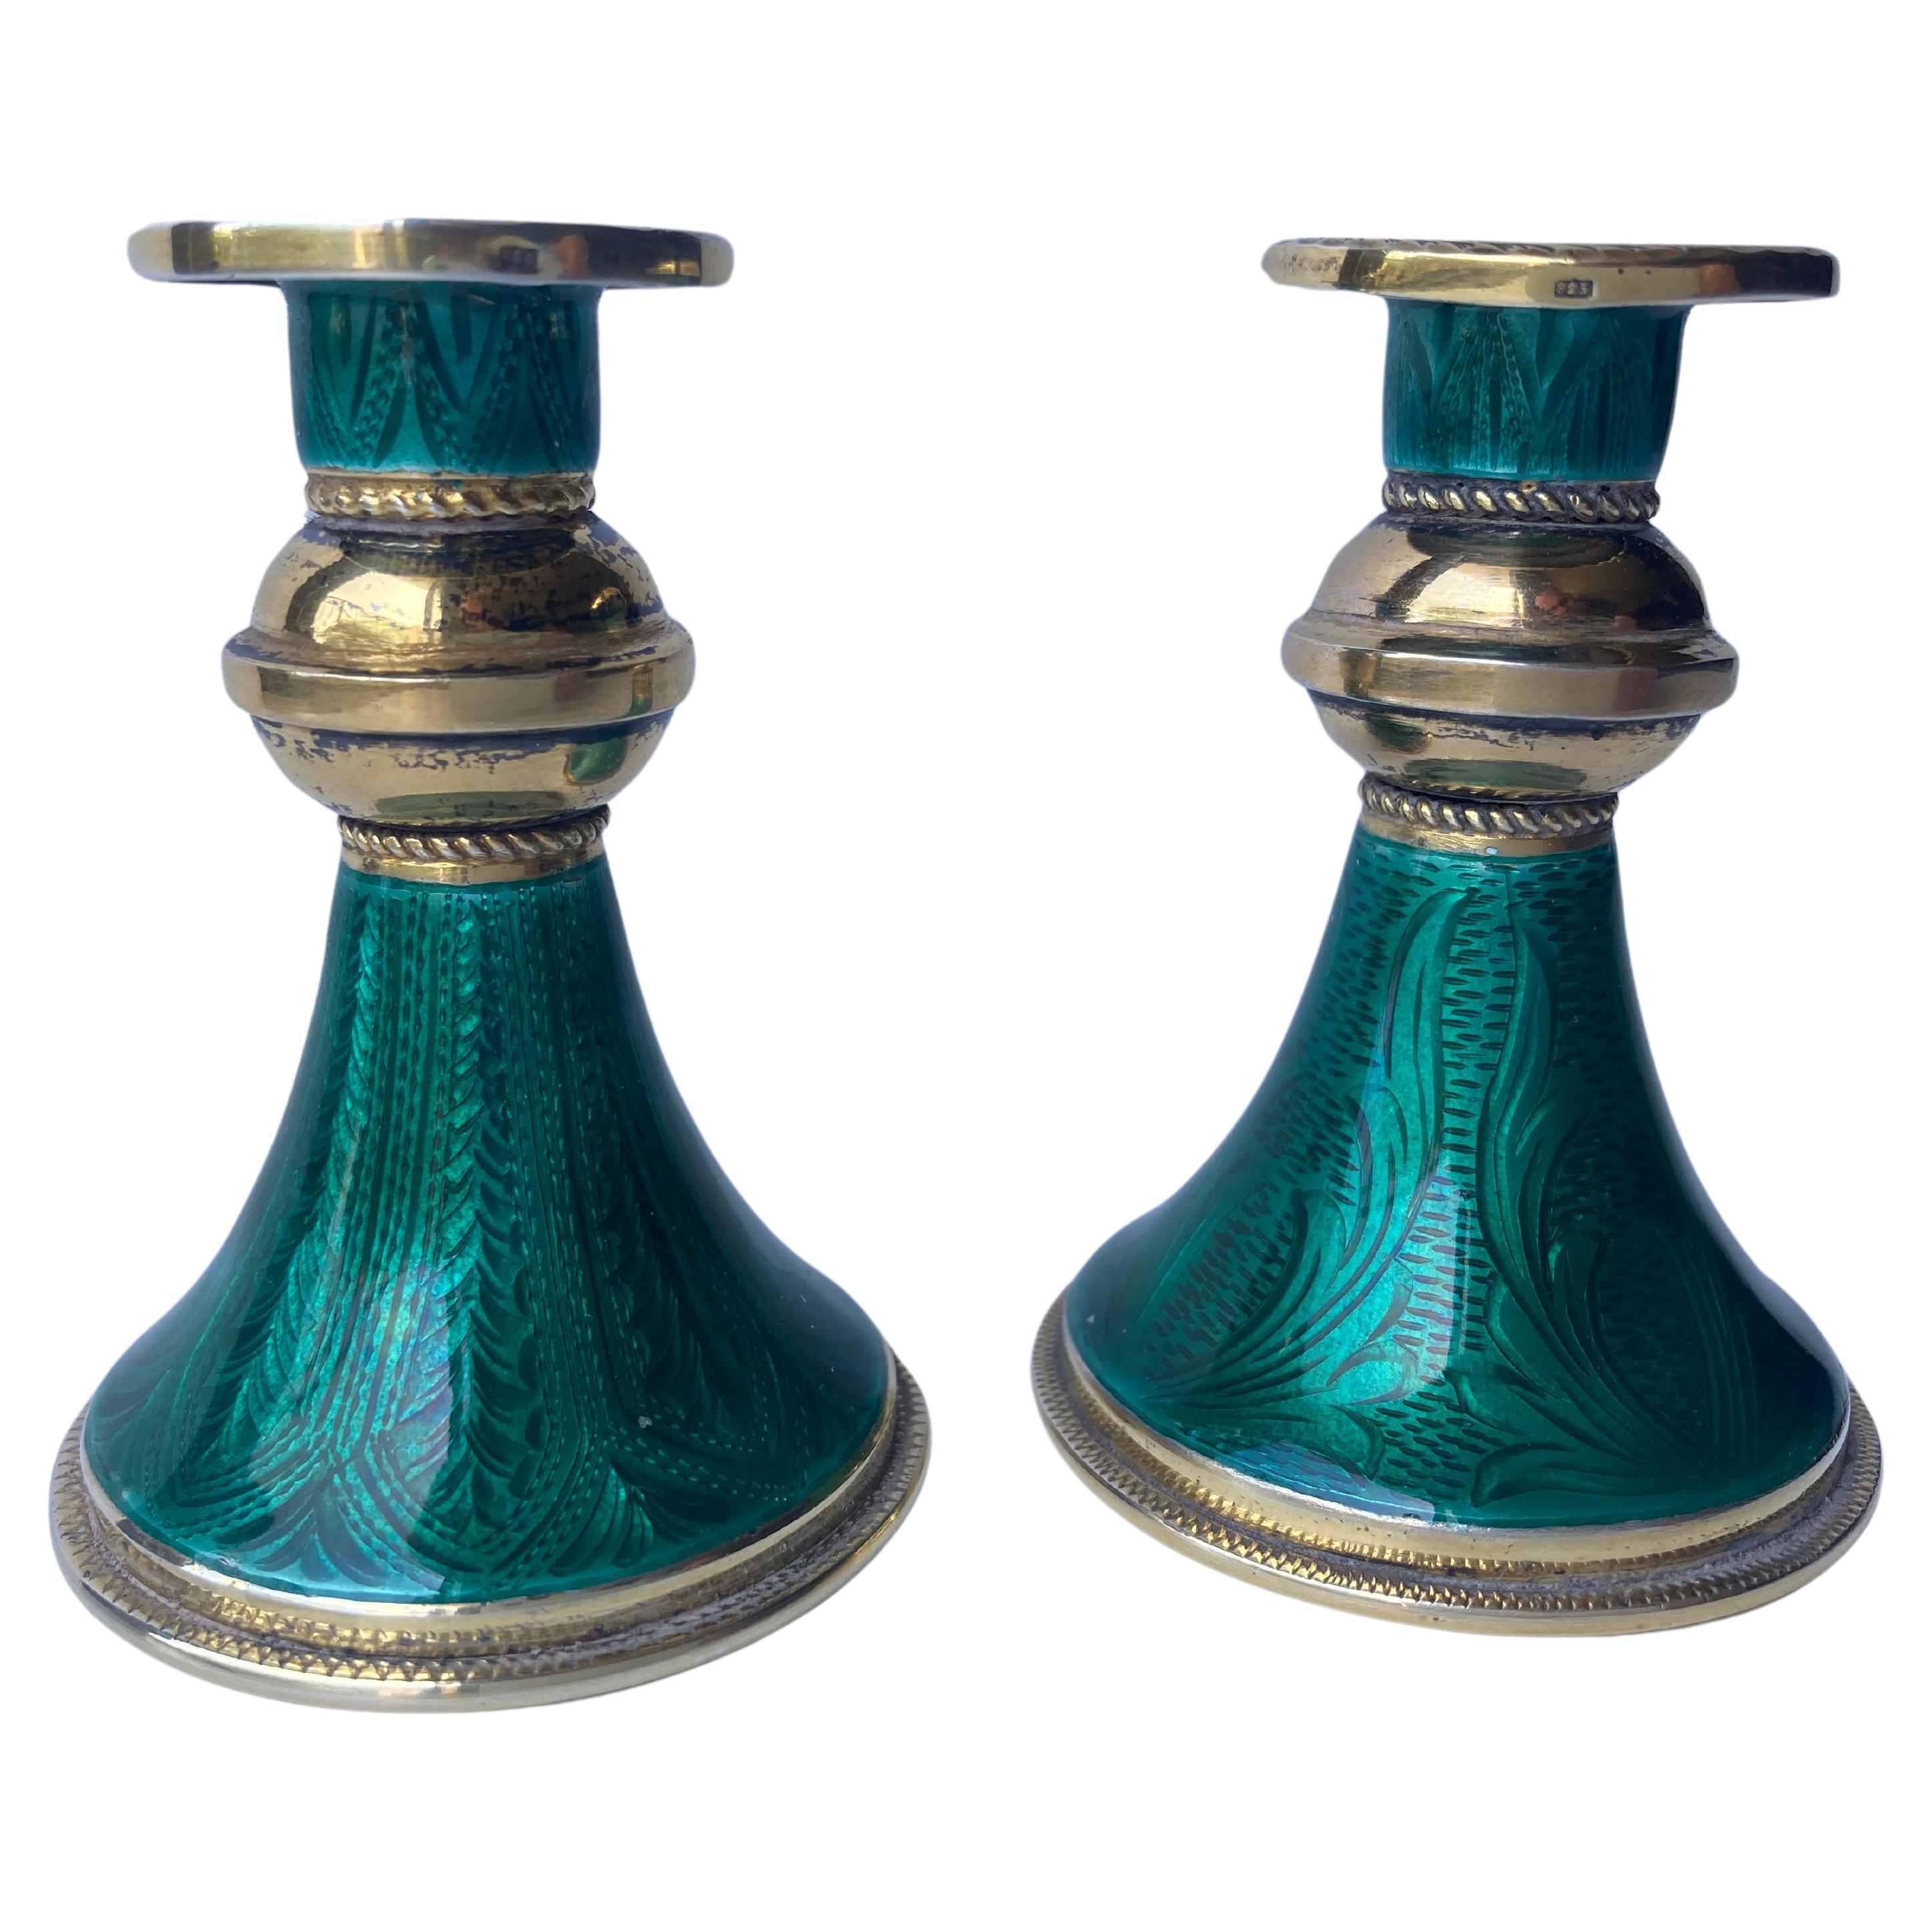 Paar vergoldete und emaillierte grüne guillochierte Kerzenständer aus Sterlingsilber, gekennzeichnet 925.